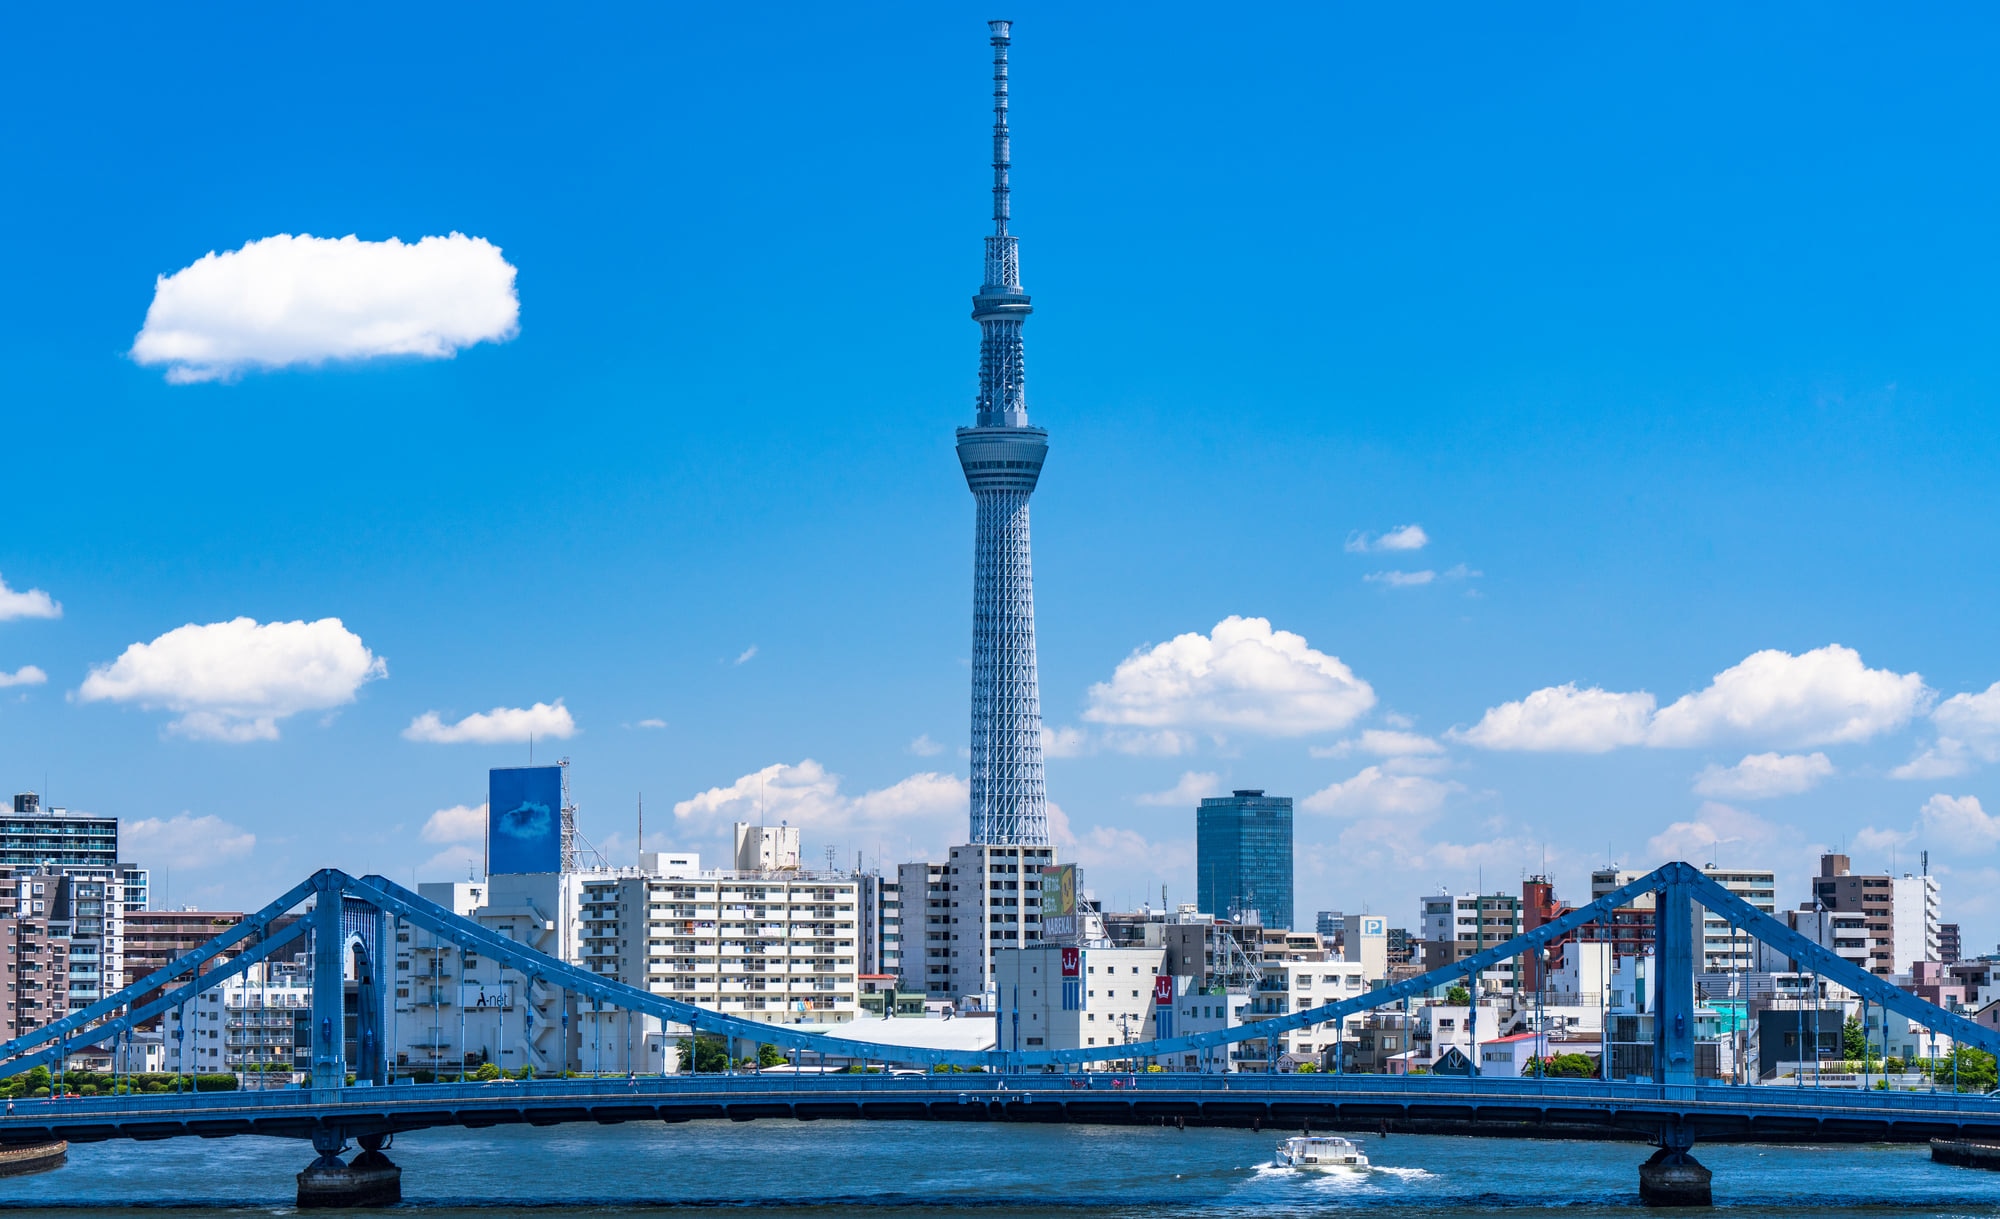 日本が誇る世界一の電波塔 東京スカイツリーで楽しむ7つのポイント Skyticket 観光ガイド